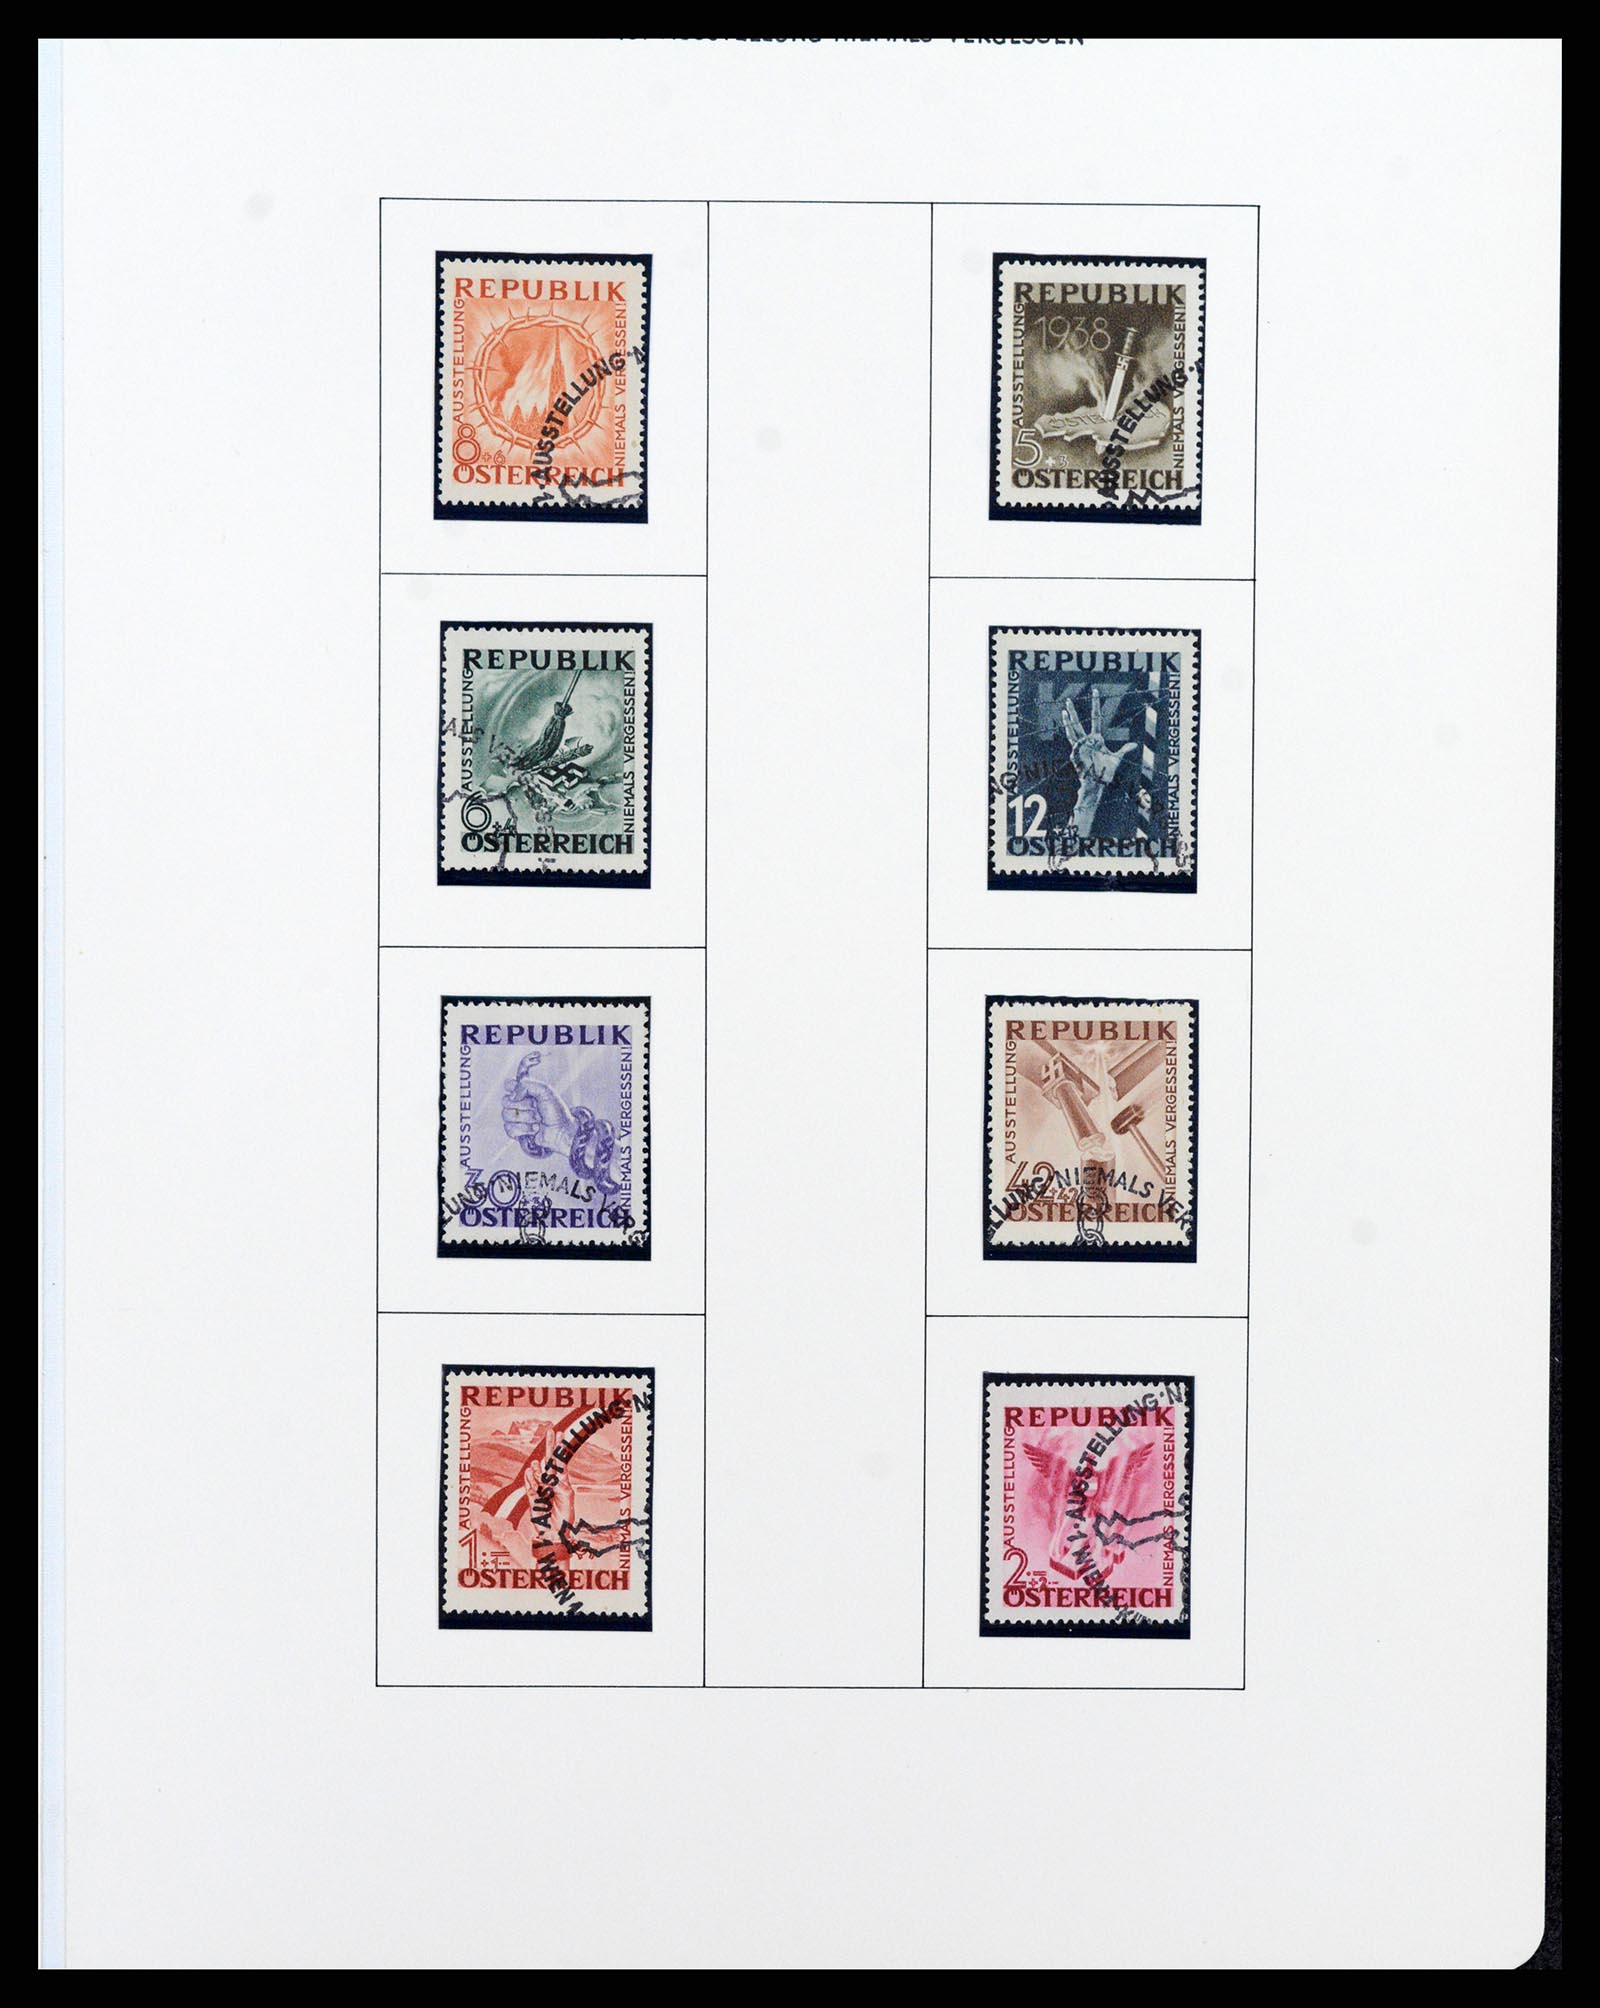 37090 575 - Postzegelverzameling 37090 Oostenrijk supercollectie 1850-1947.